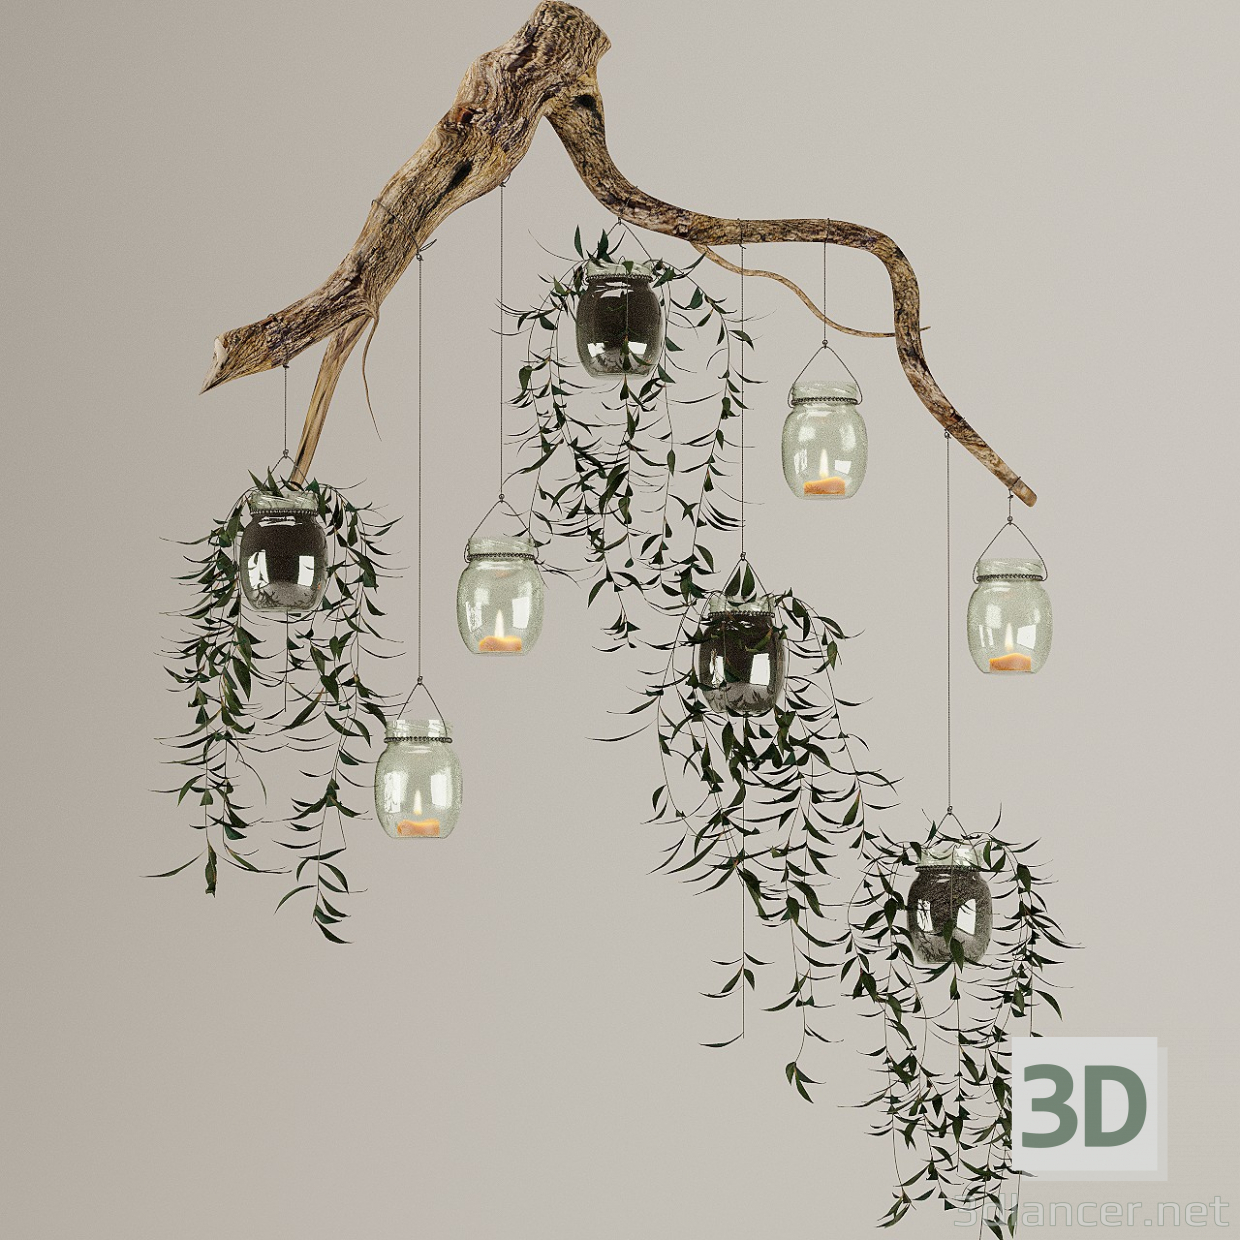 3D Tencere ve mumlar bitkiler ile ahşap şube modeli satın - render